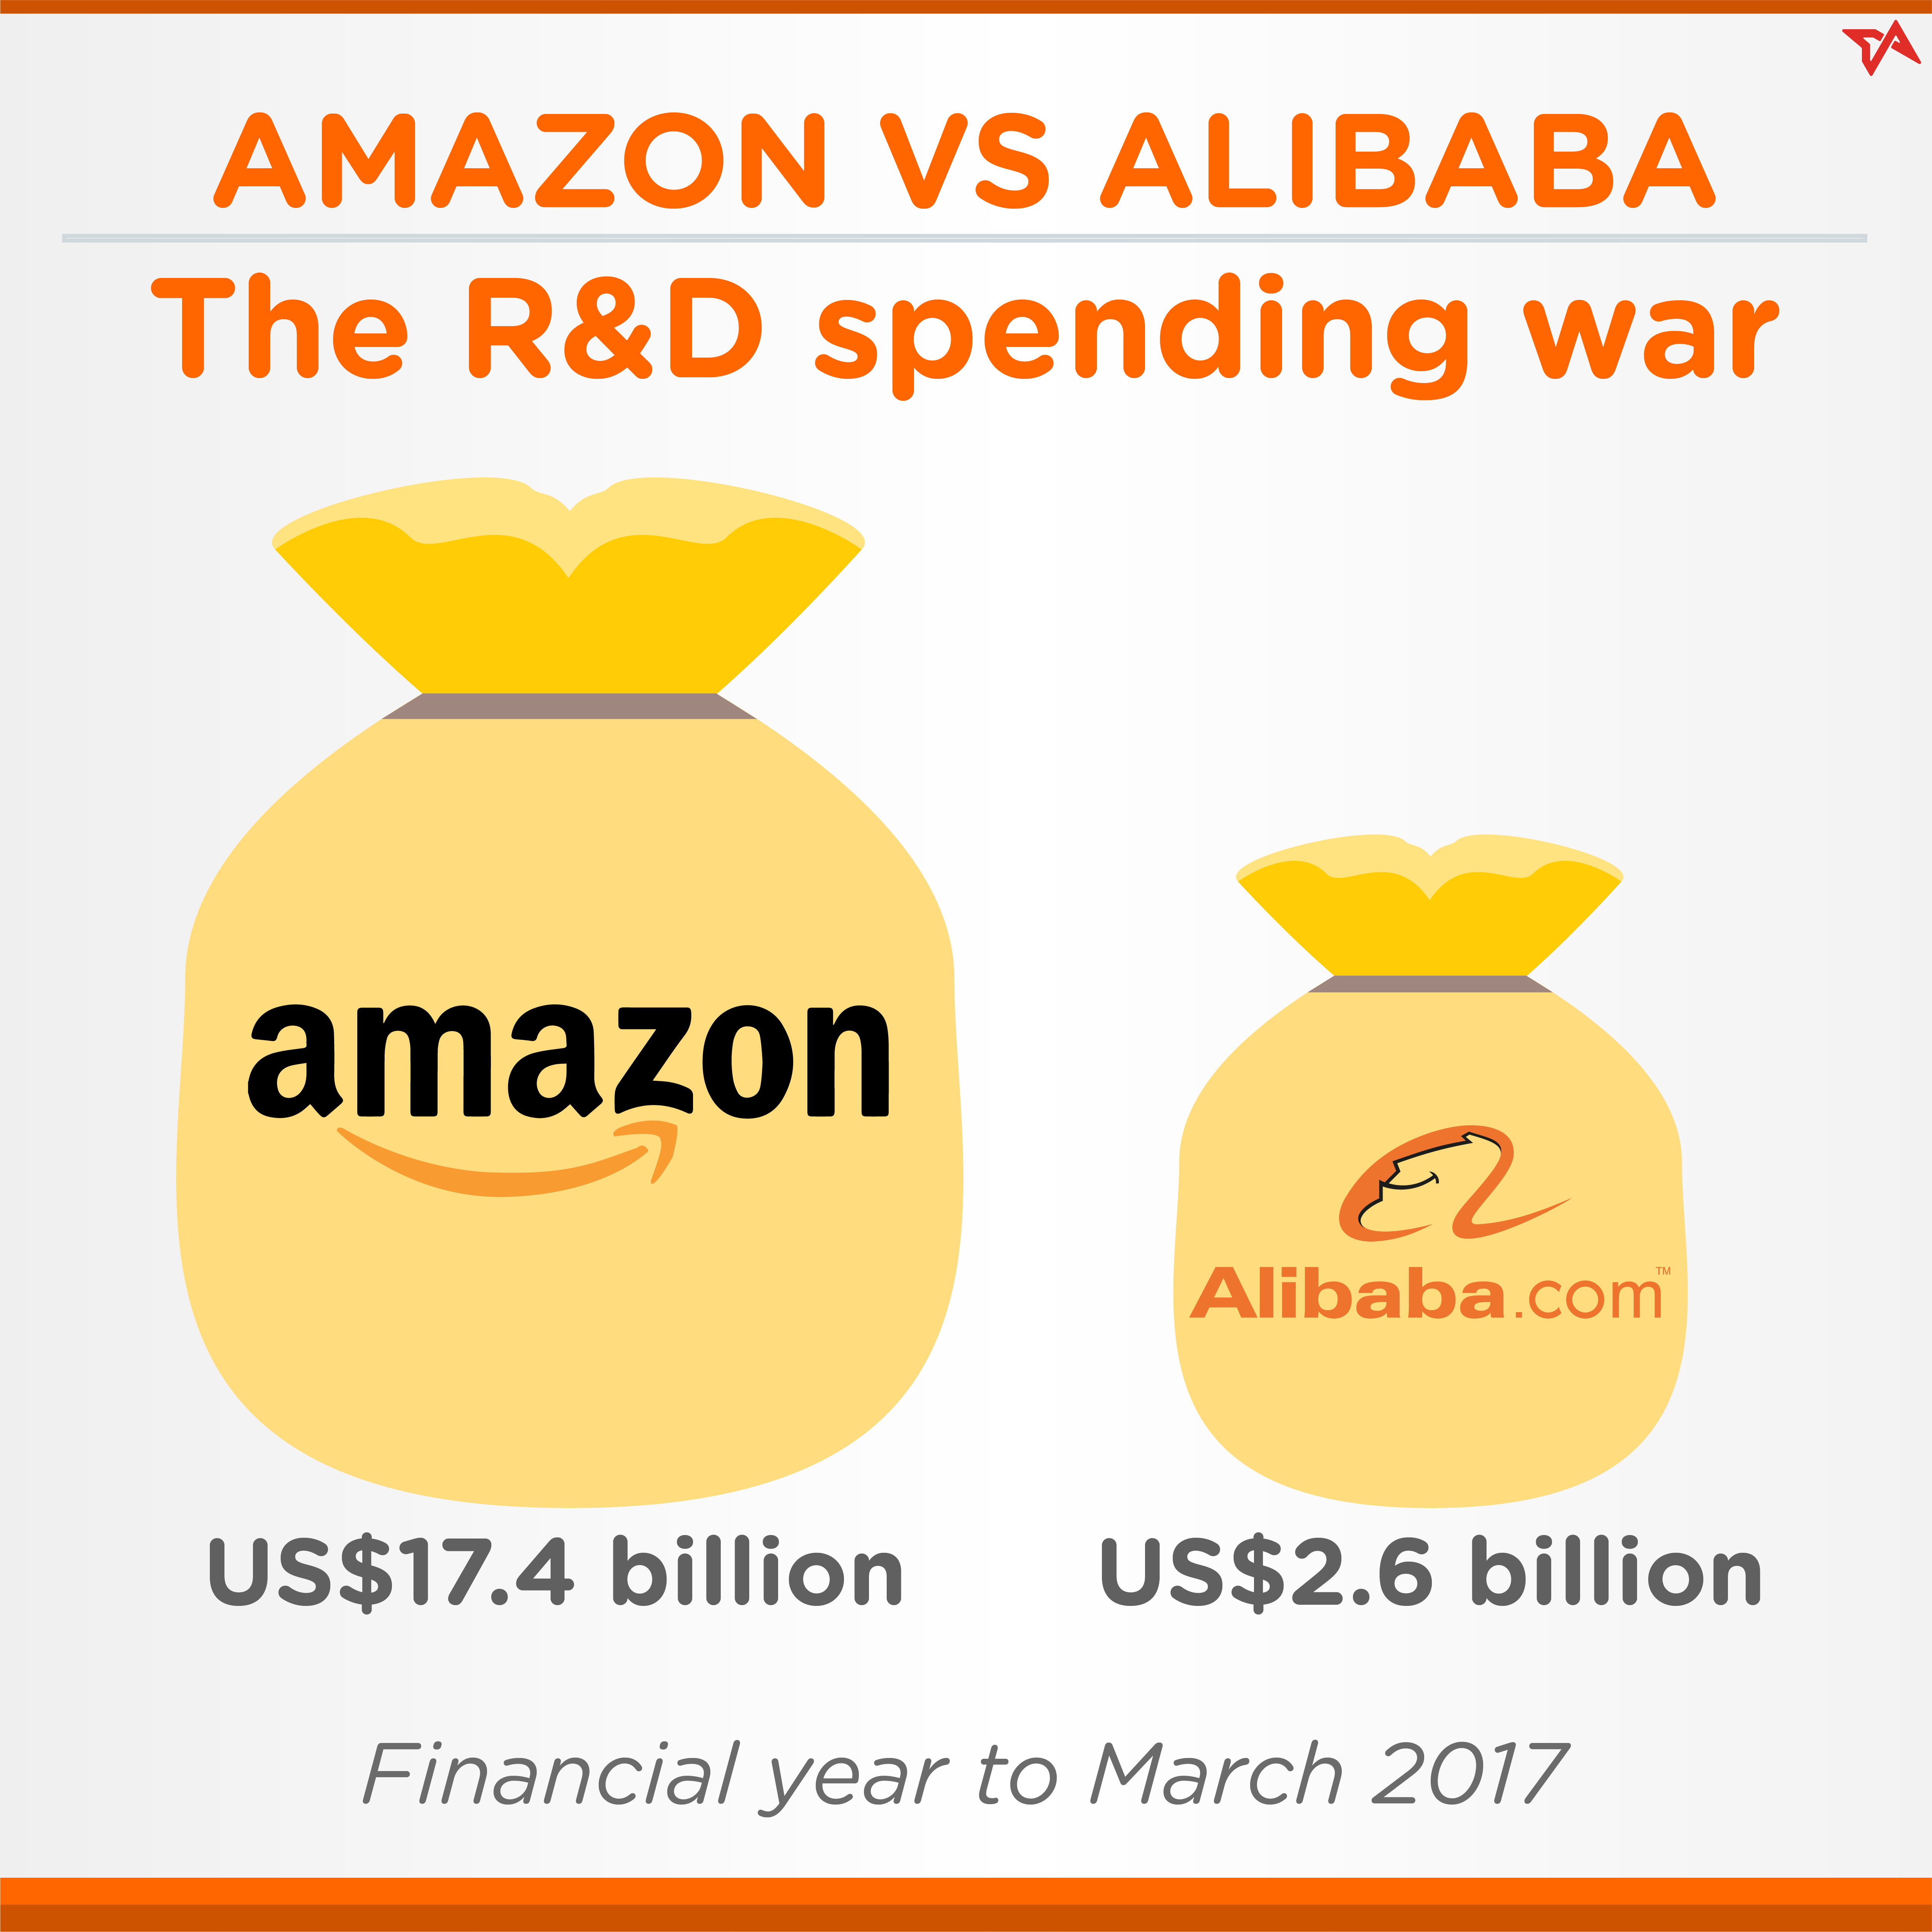 Alibaba versus Amazon in R&D